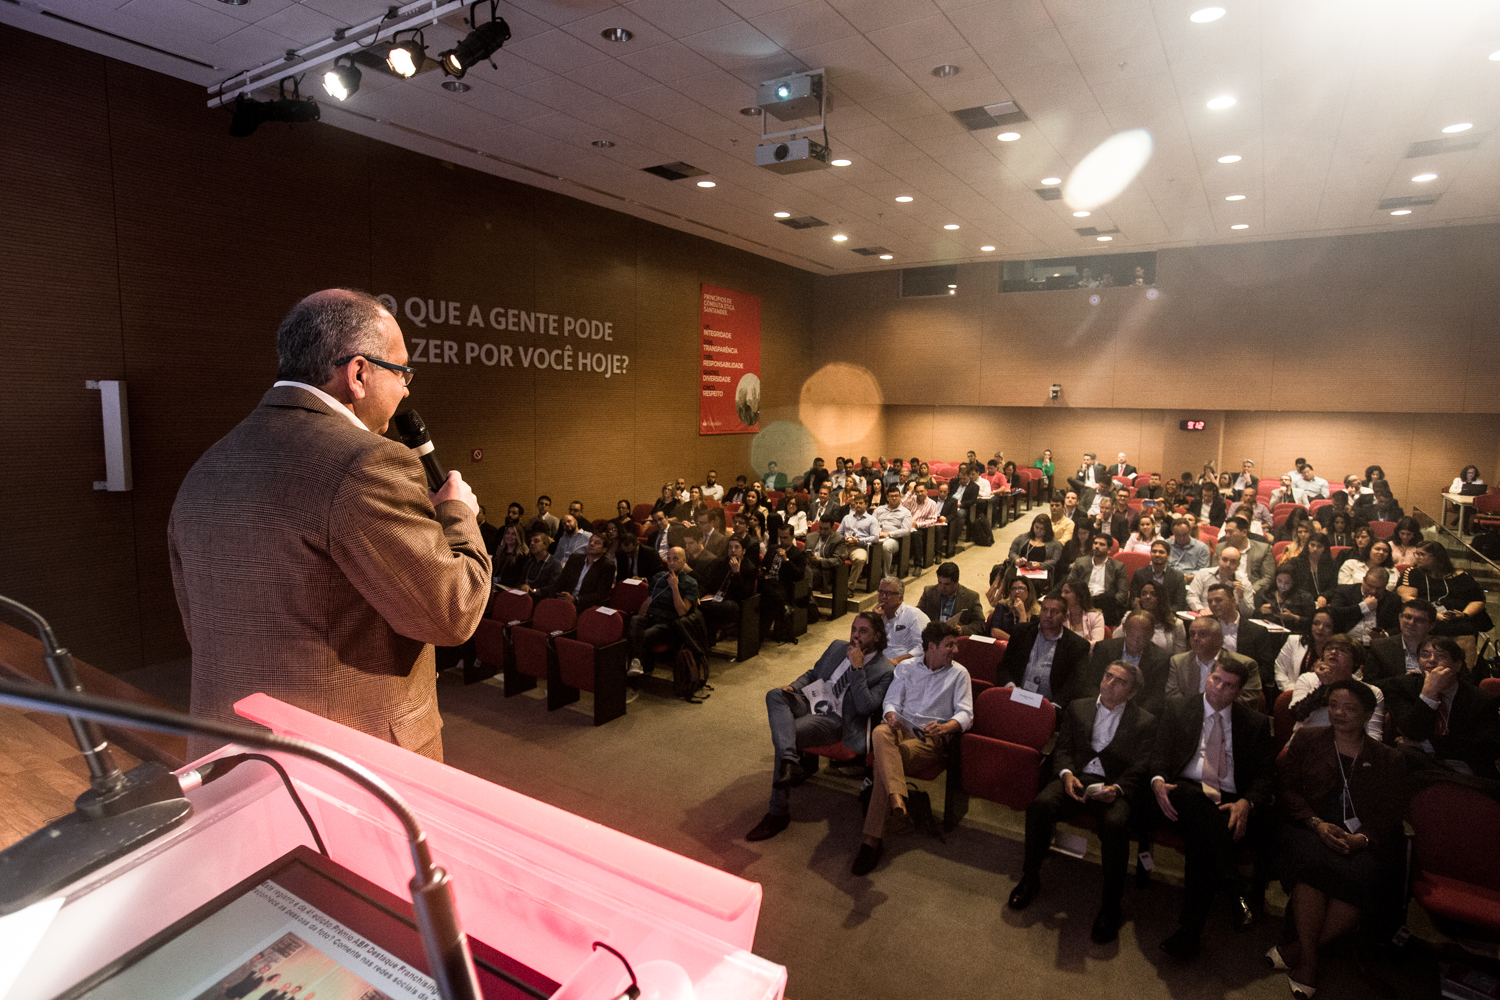 4º Congresso Internacional ABF: foco em ética, inovação e eficiência